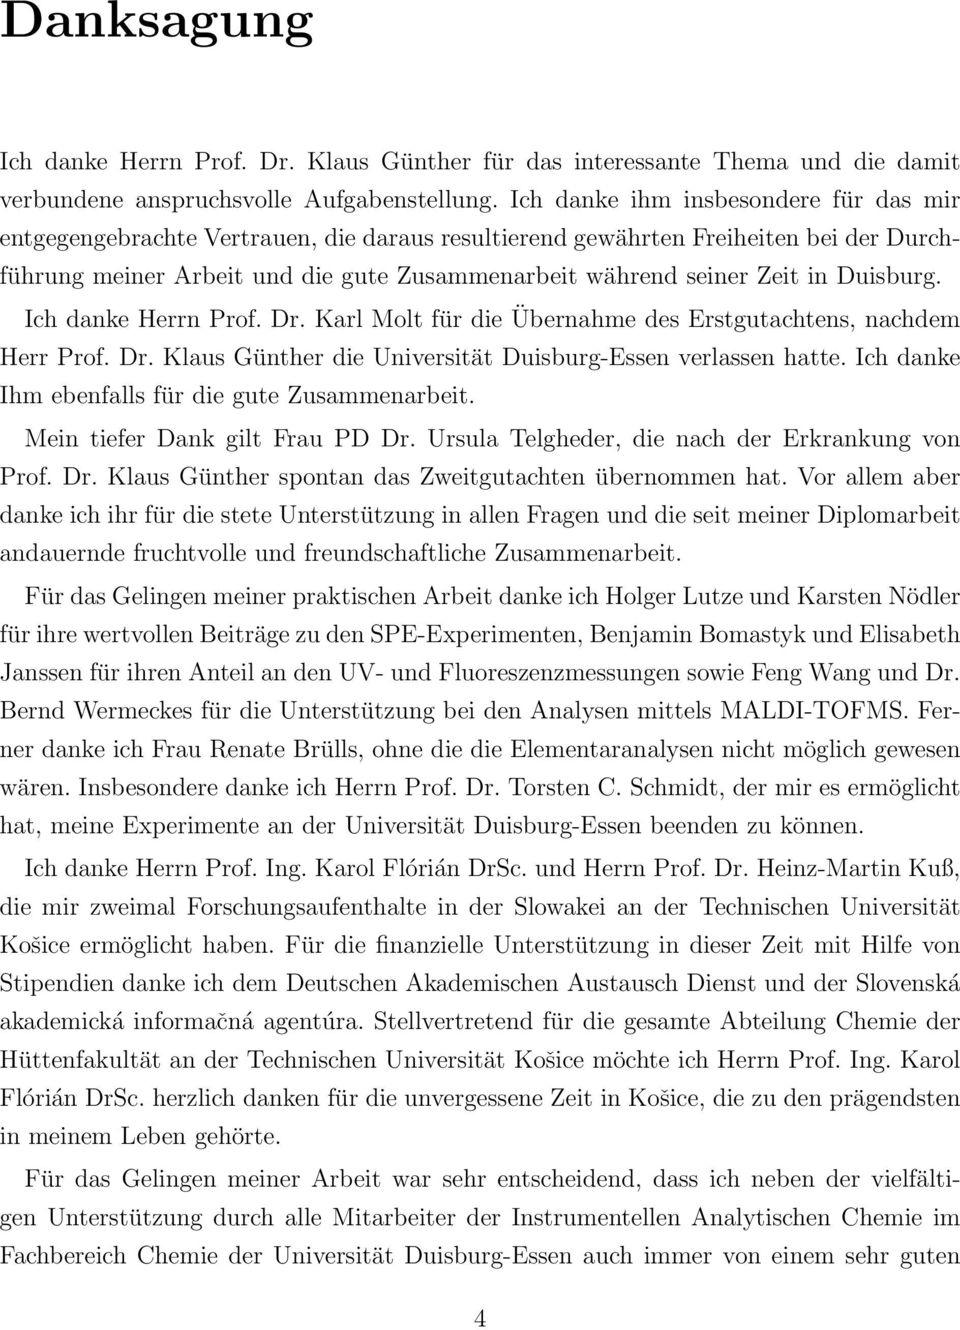 Duisburg. Ich danke Herrn Prof. Dr. Karl Molt für die Übernahme des Erstgutachtens, nachdem Herr Prof. Dr. Klaus Günther die Universität Duisburg-Essen verlassen hatte.